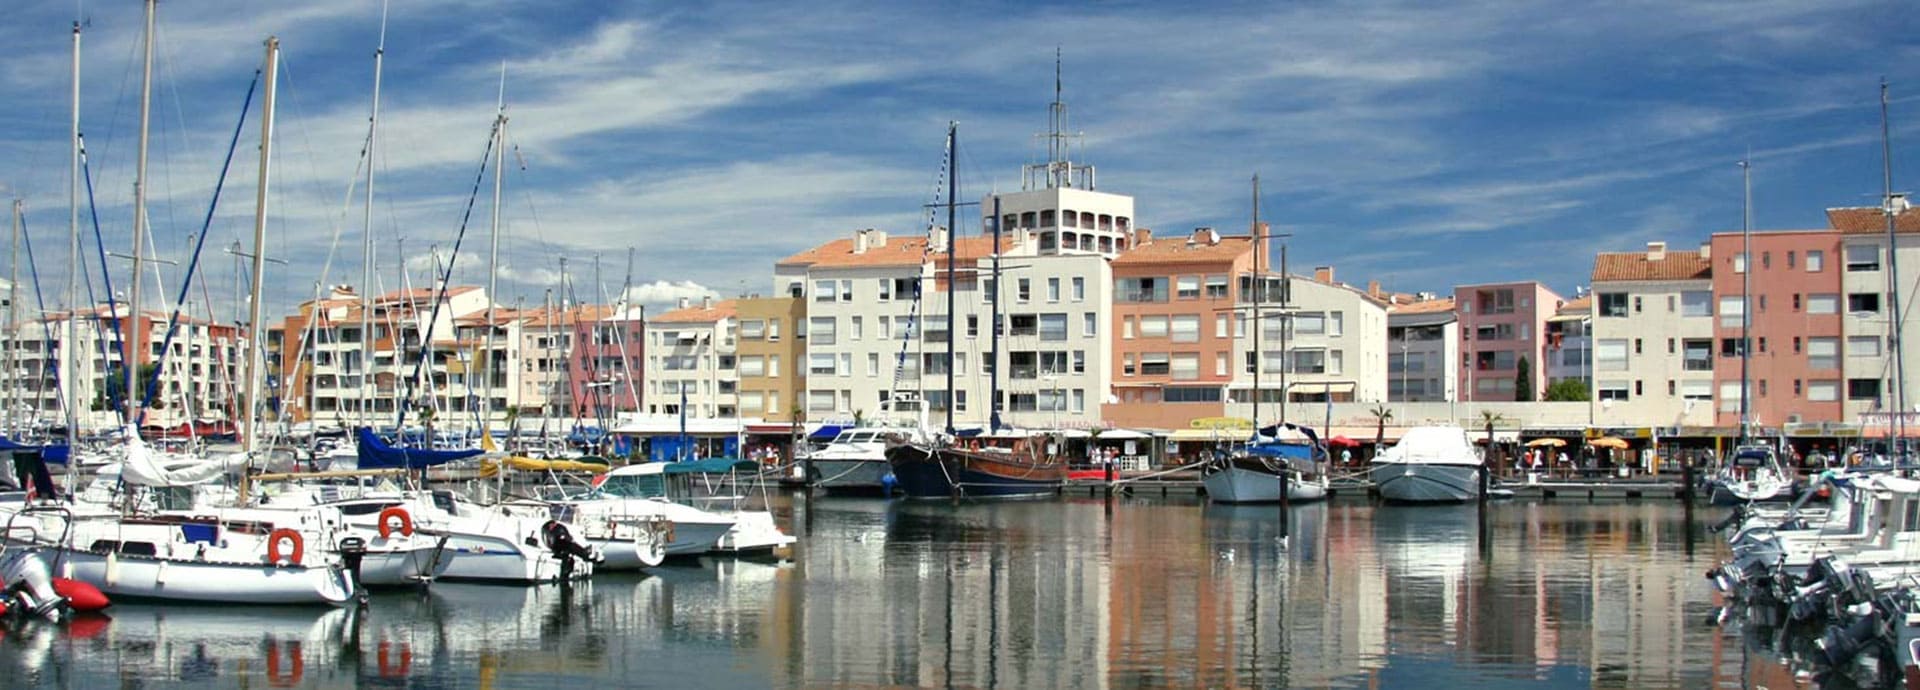 Le port du Cap d’Agde, station balnéaire située dans le département de Hérault